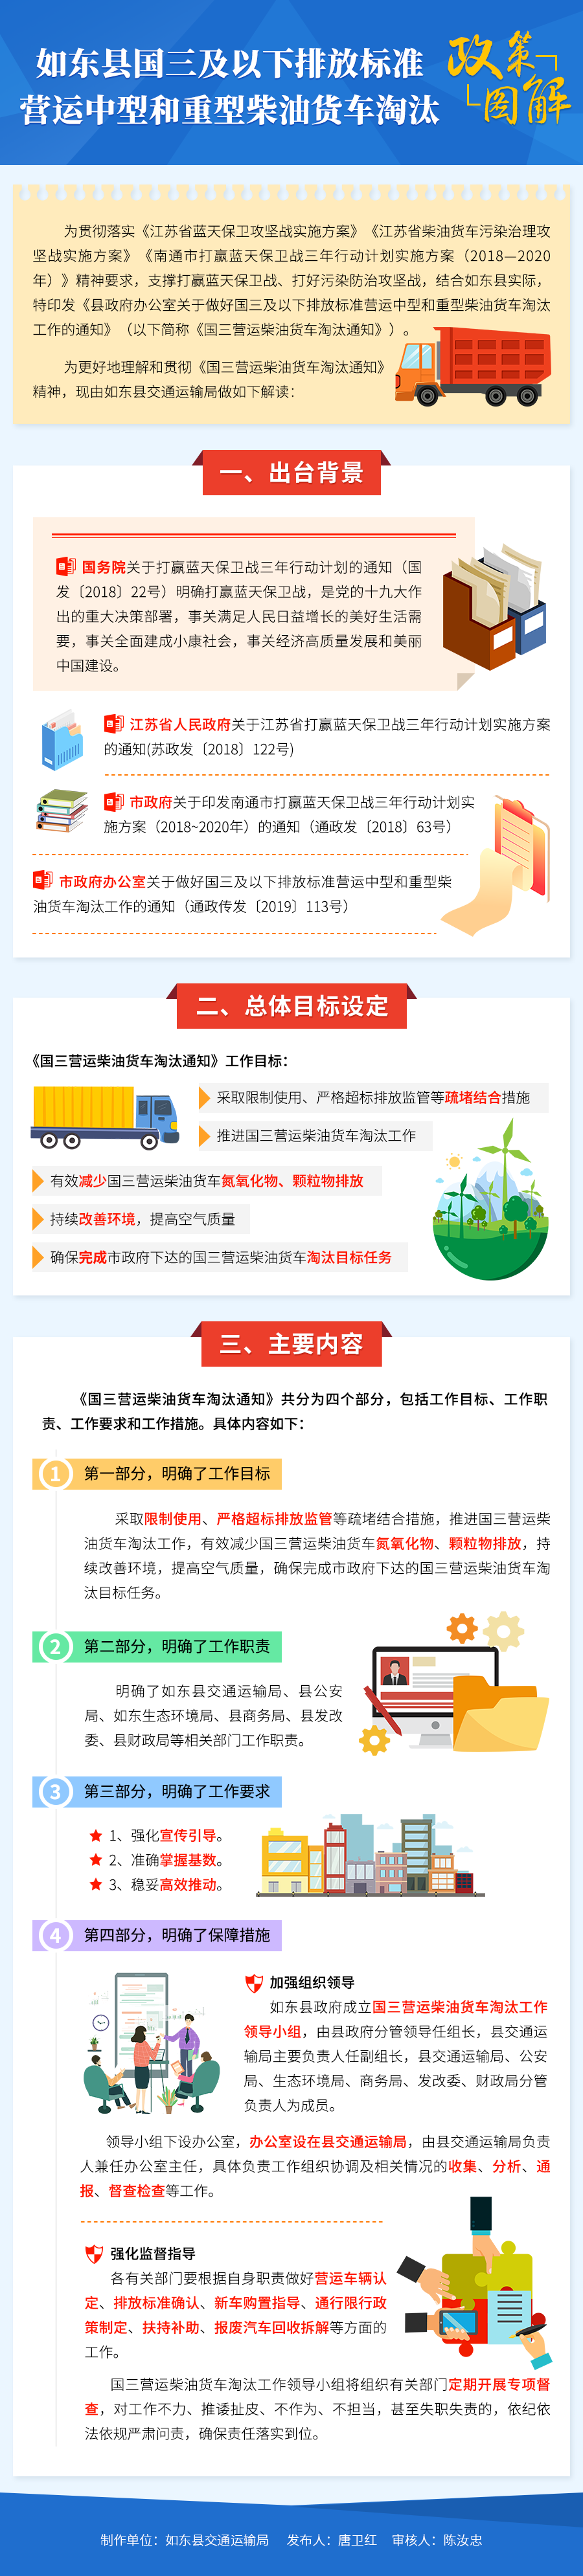 《如东县关于做好国三及以下中重型营运货车淘汰工作-政策解读》-图解-200409.png